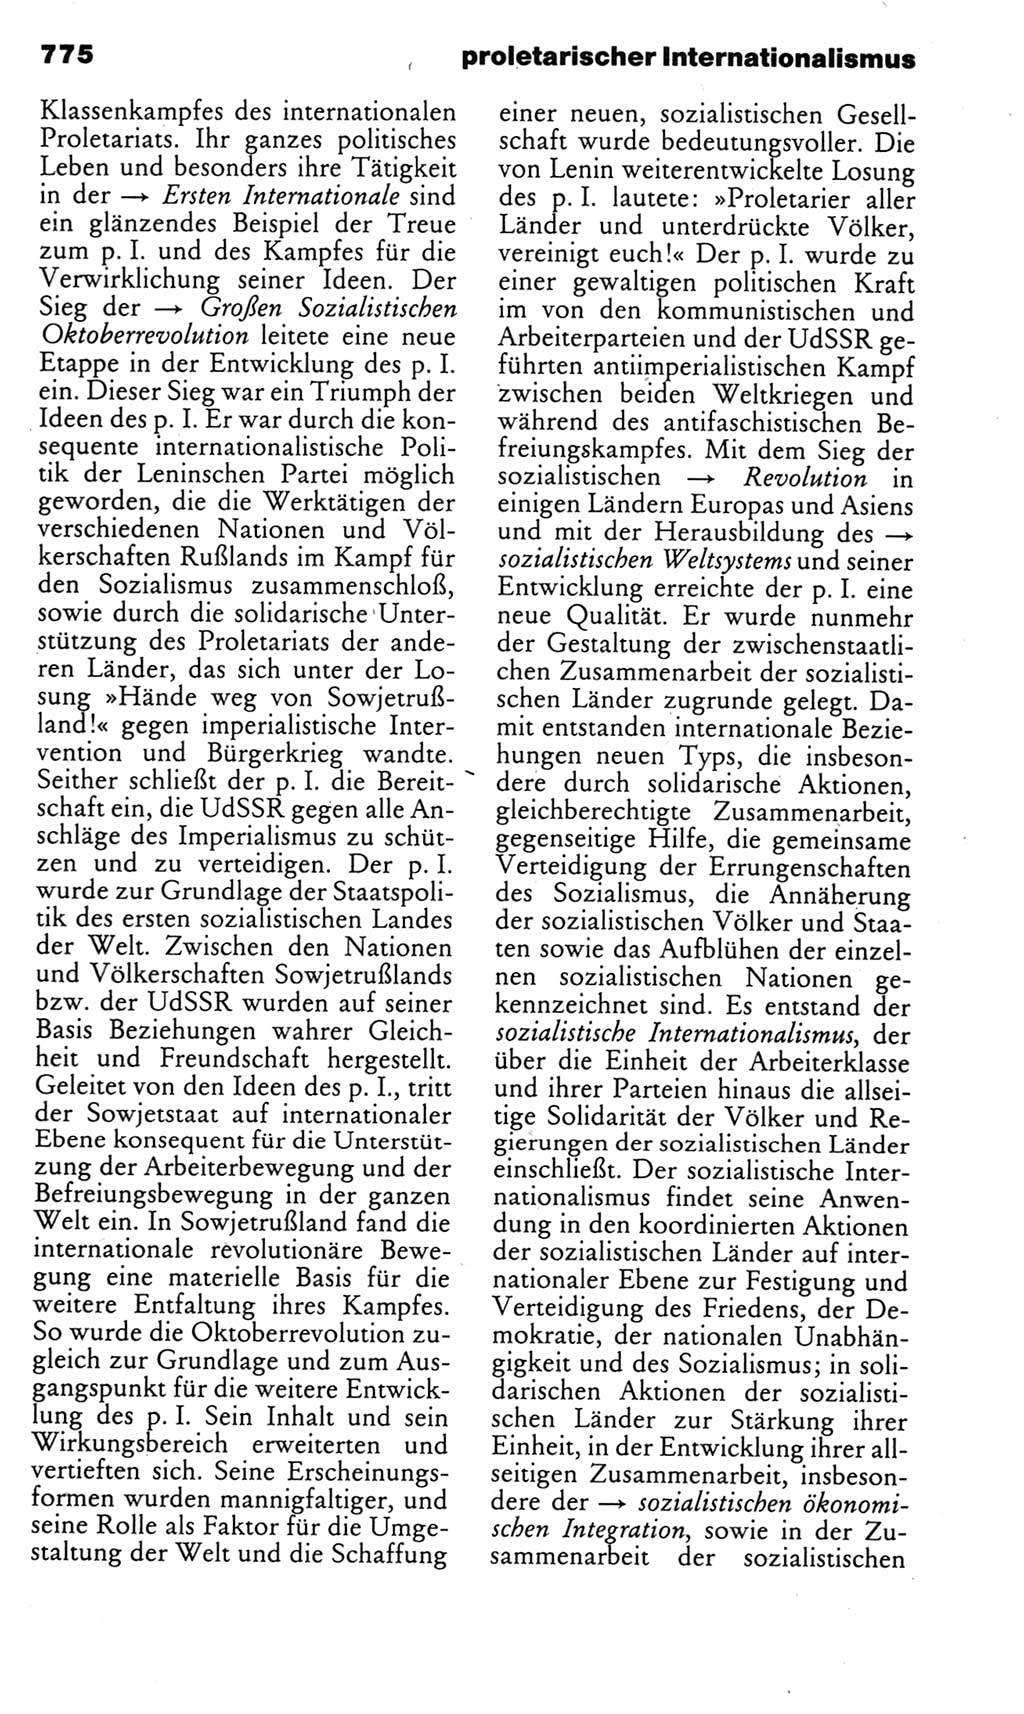 Kleines politisches Wörterbuch [Deutsche Demokratische Republik (DDR)] 1985, Seite 775 (Kl. pol. Wb. DDR 1985, S. 775)